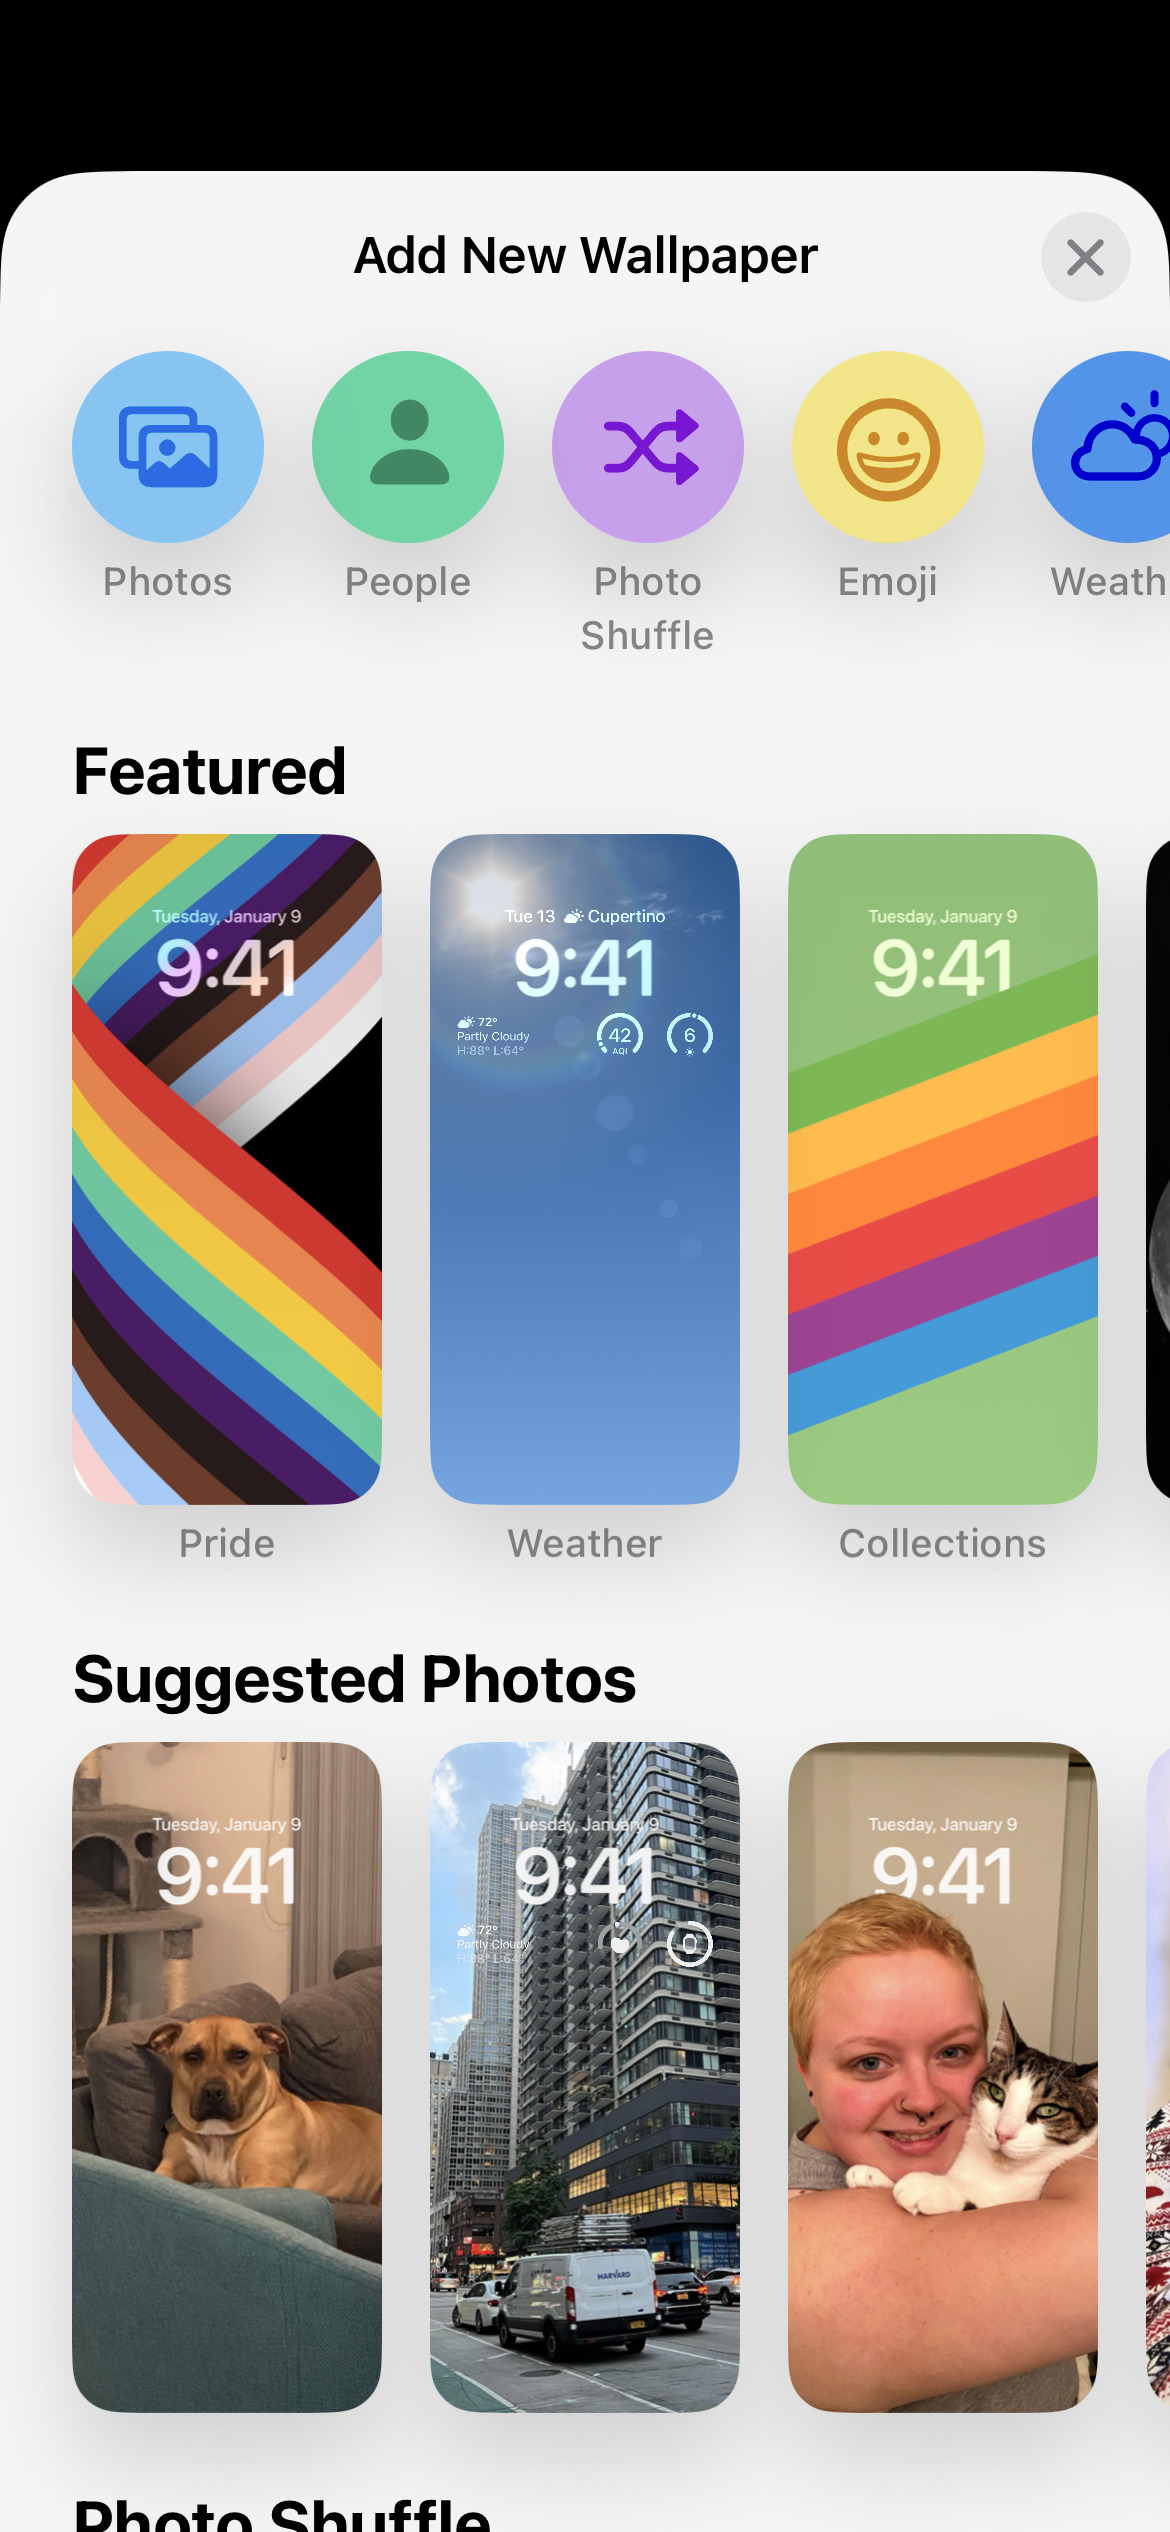 Cách tùy chỉnh màn hình khóa iPhone trên iOS 16 giúp cho bạn có thể tùy chỉnh màn hình khóa điện thoại theo phong cách và sở thích của mình. Hãy tìm hiểu cách tùy chỉnh này để tạo nên một màn hình khóa thật độc đáo và sang trọng. Bạn sẽ cảm thấy thật phấn khích khi thực hiện được điều đó. 